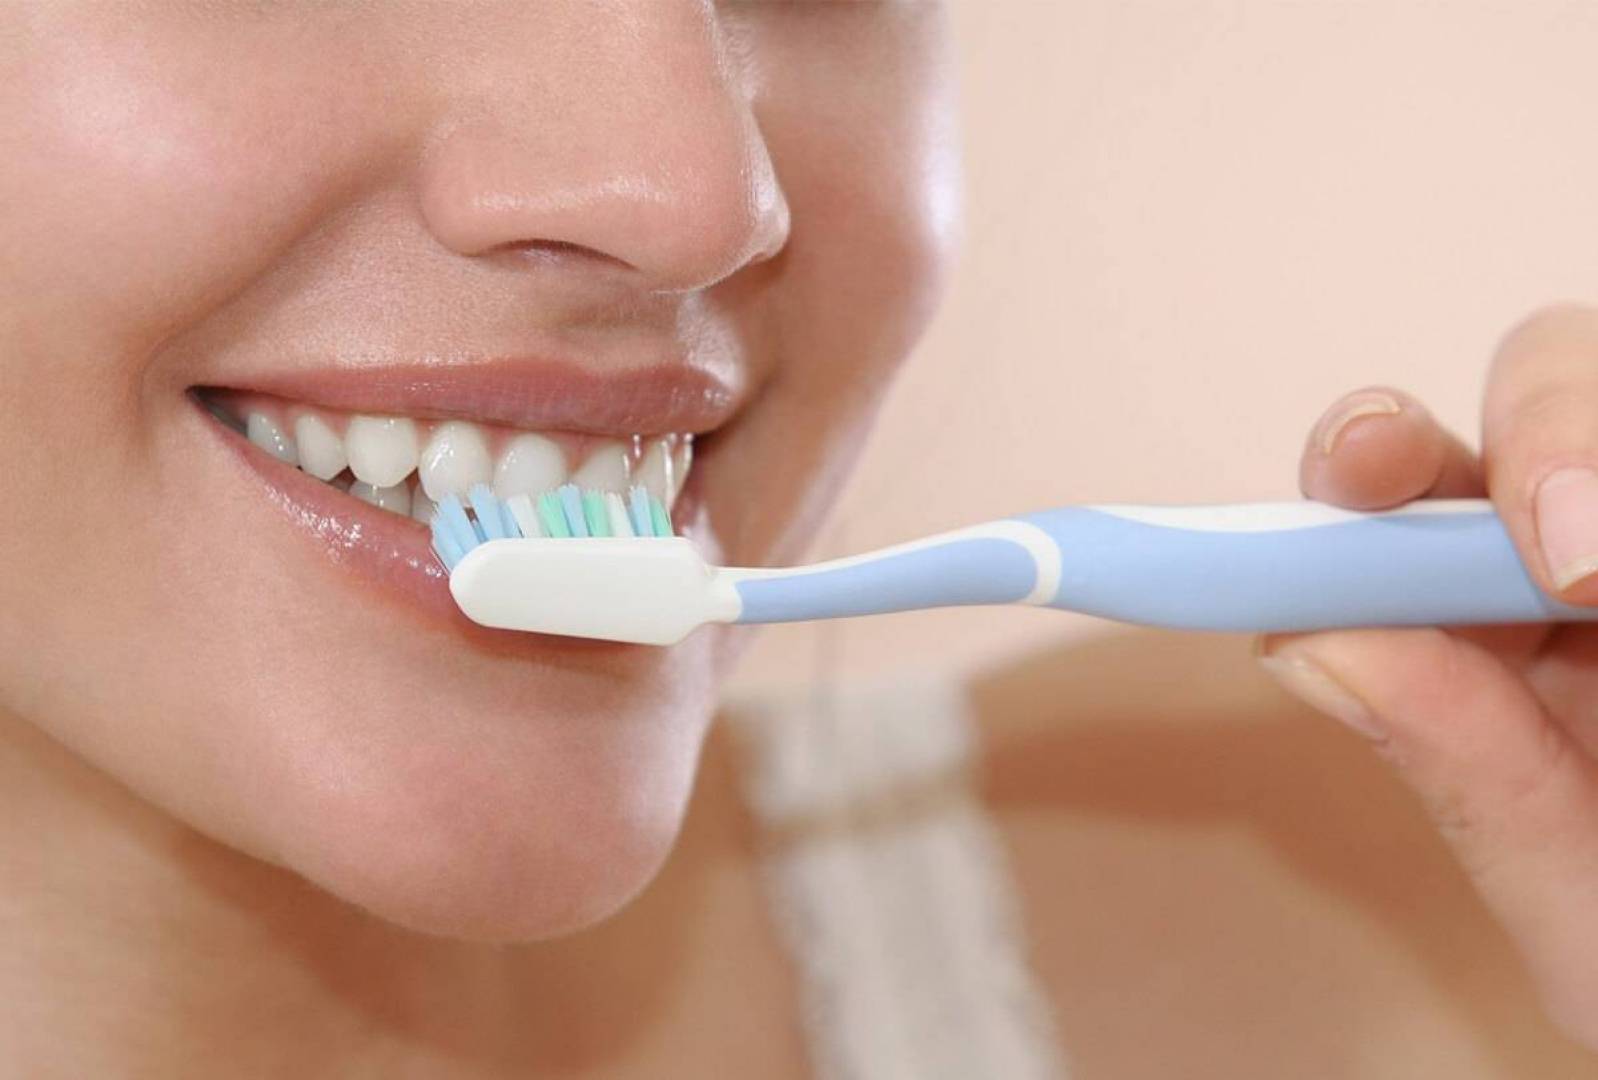 أطباء يكشفون عن خطأ شائع يستخدم بعد تنظيف الأسنان بالفرشاة